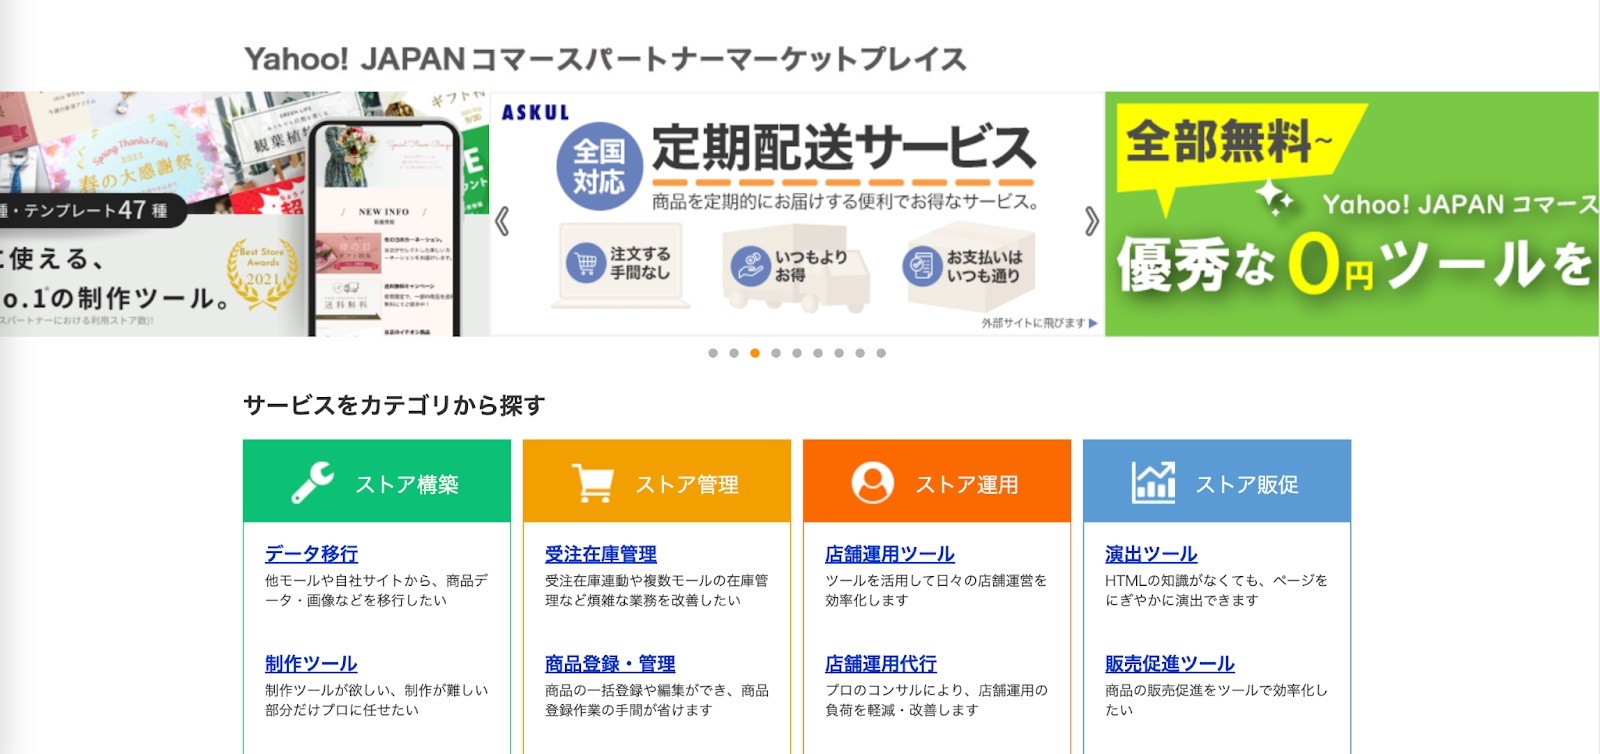 Yahoo!JAPANコマースパートナーマーケットプレイス